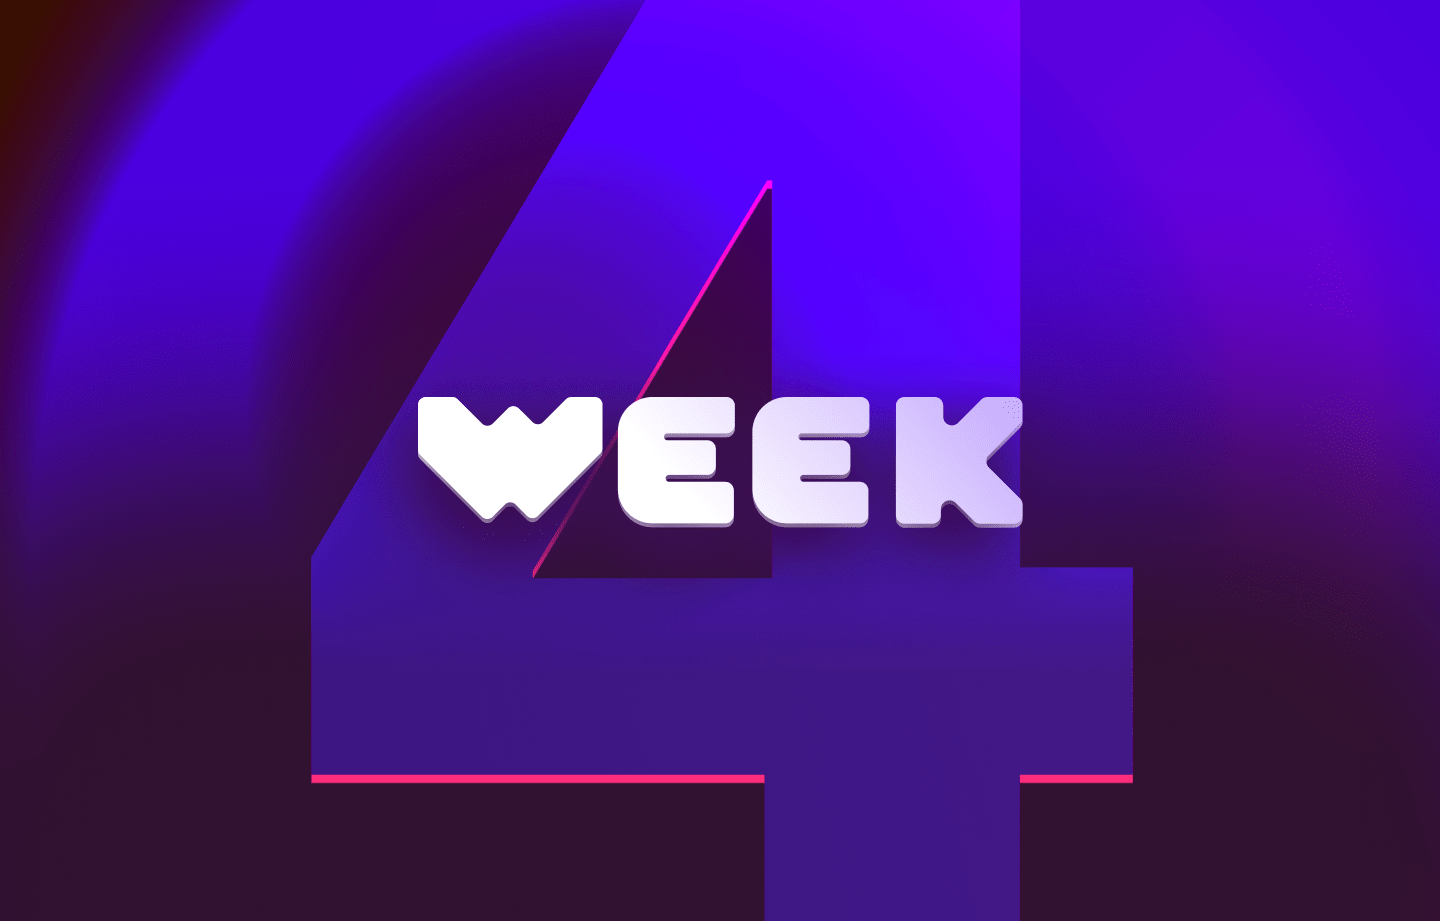 This week in web3 #4